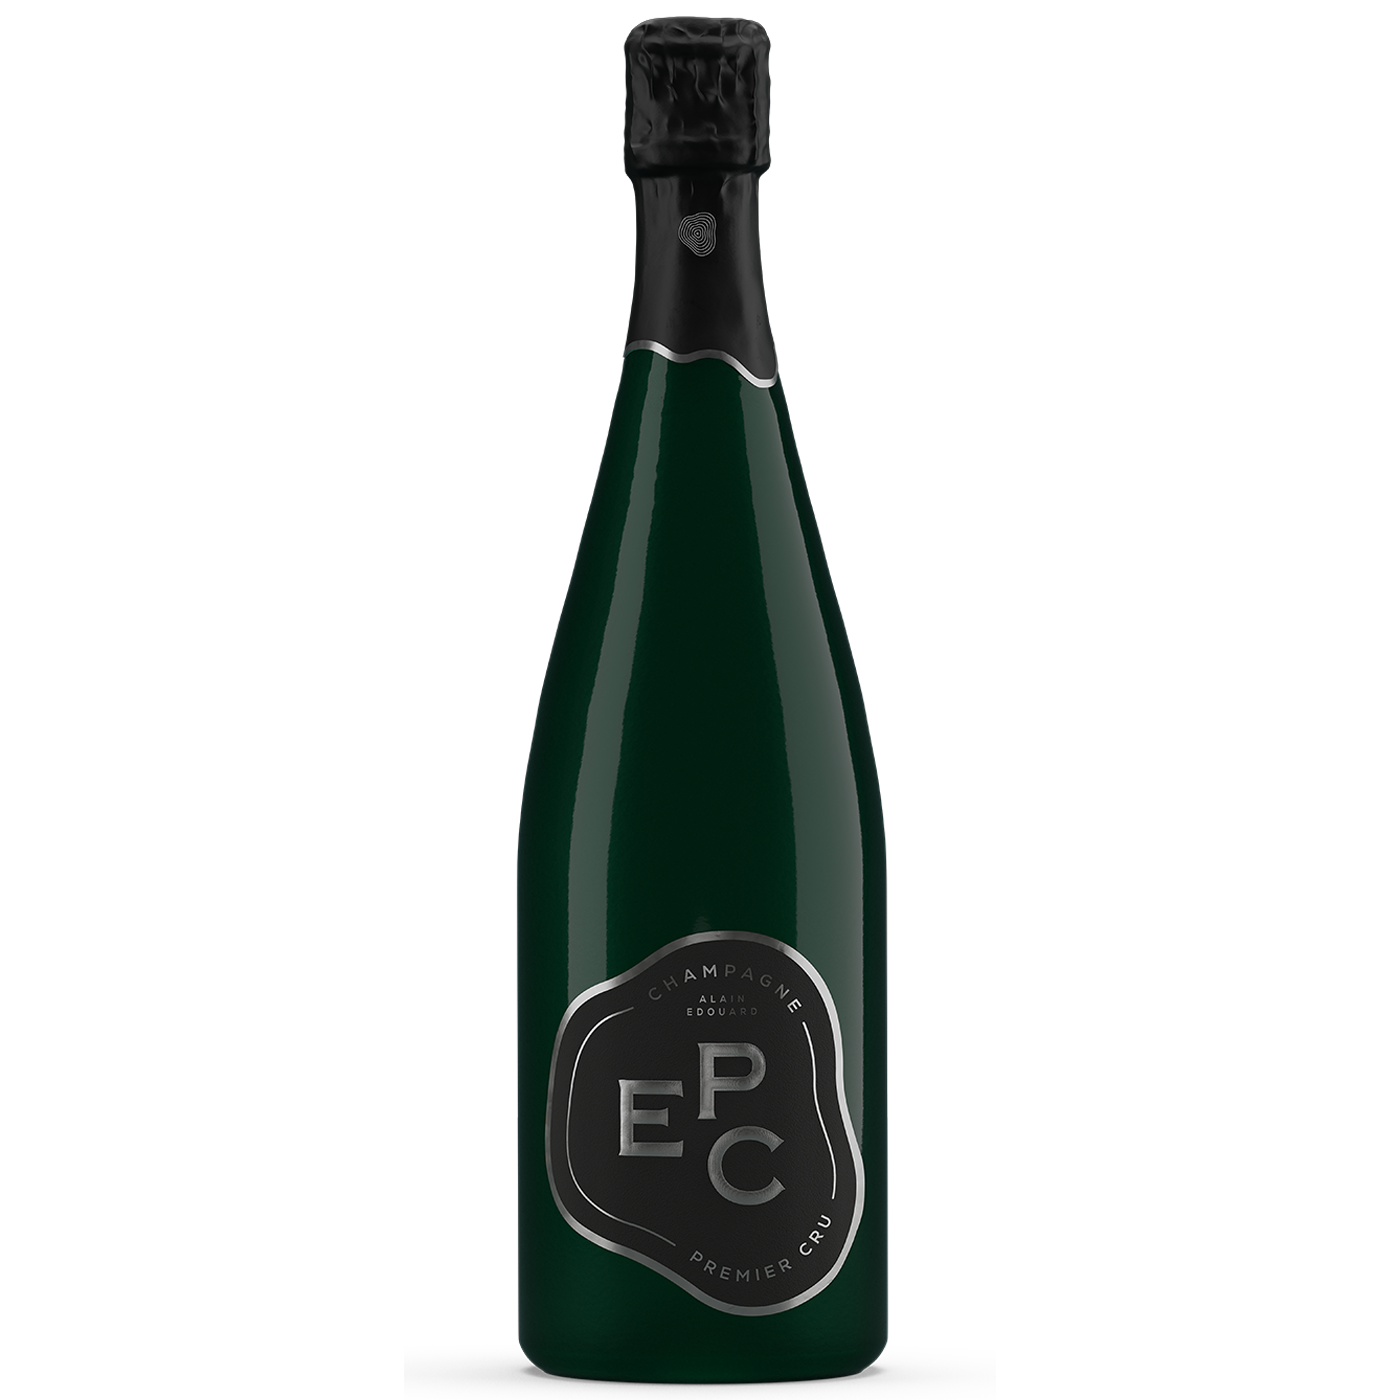 EPC Champagne Premier Cru Brut